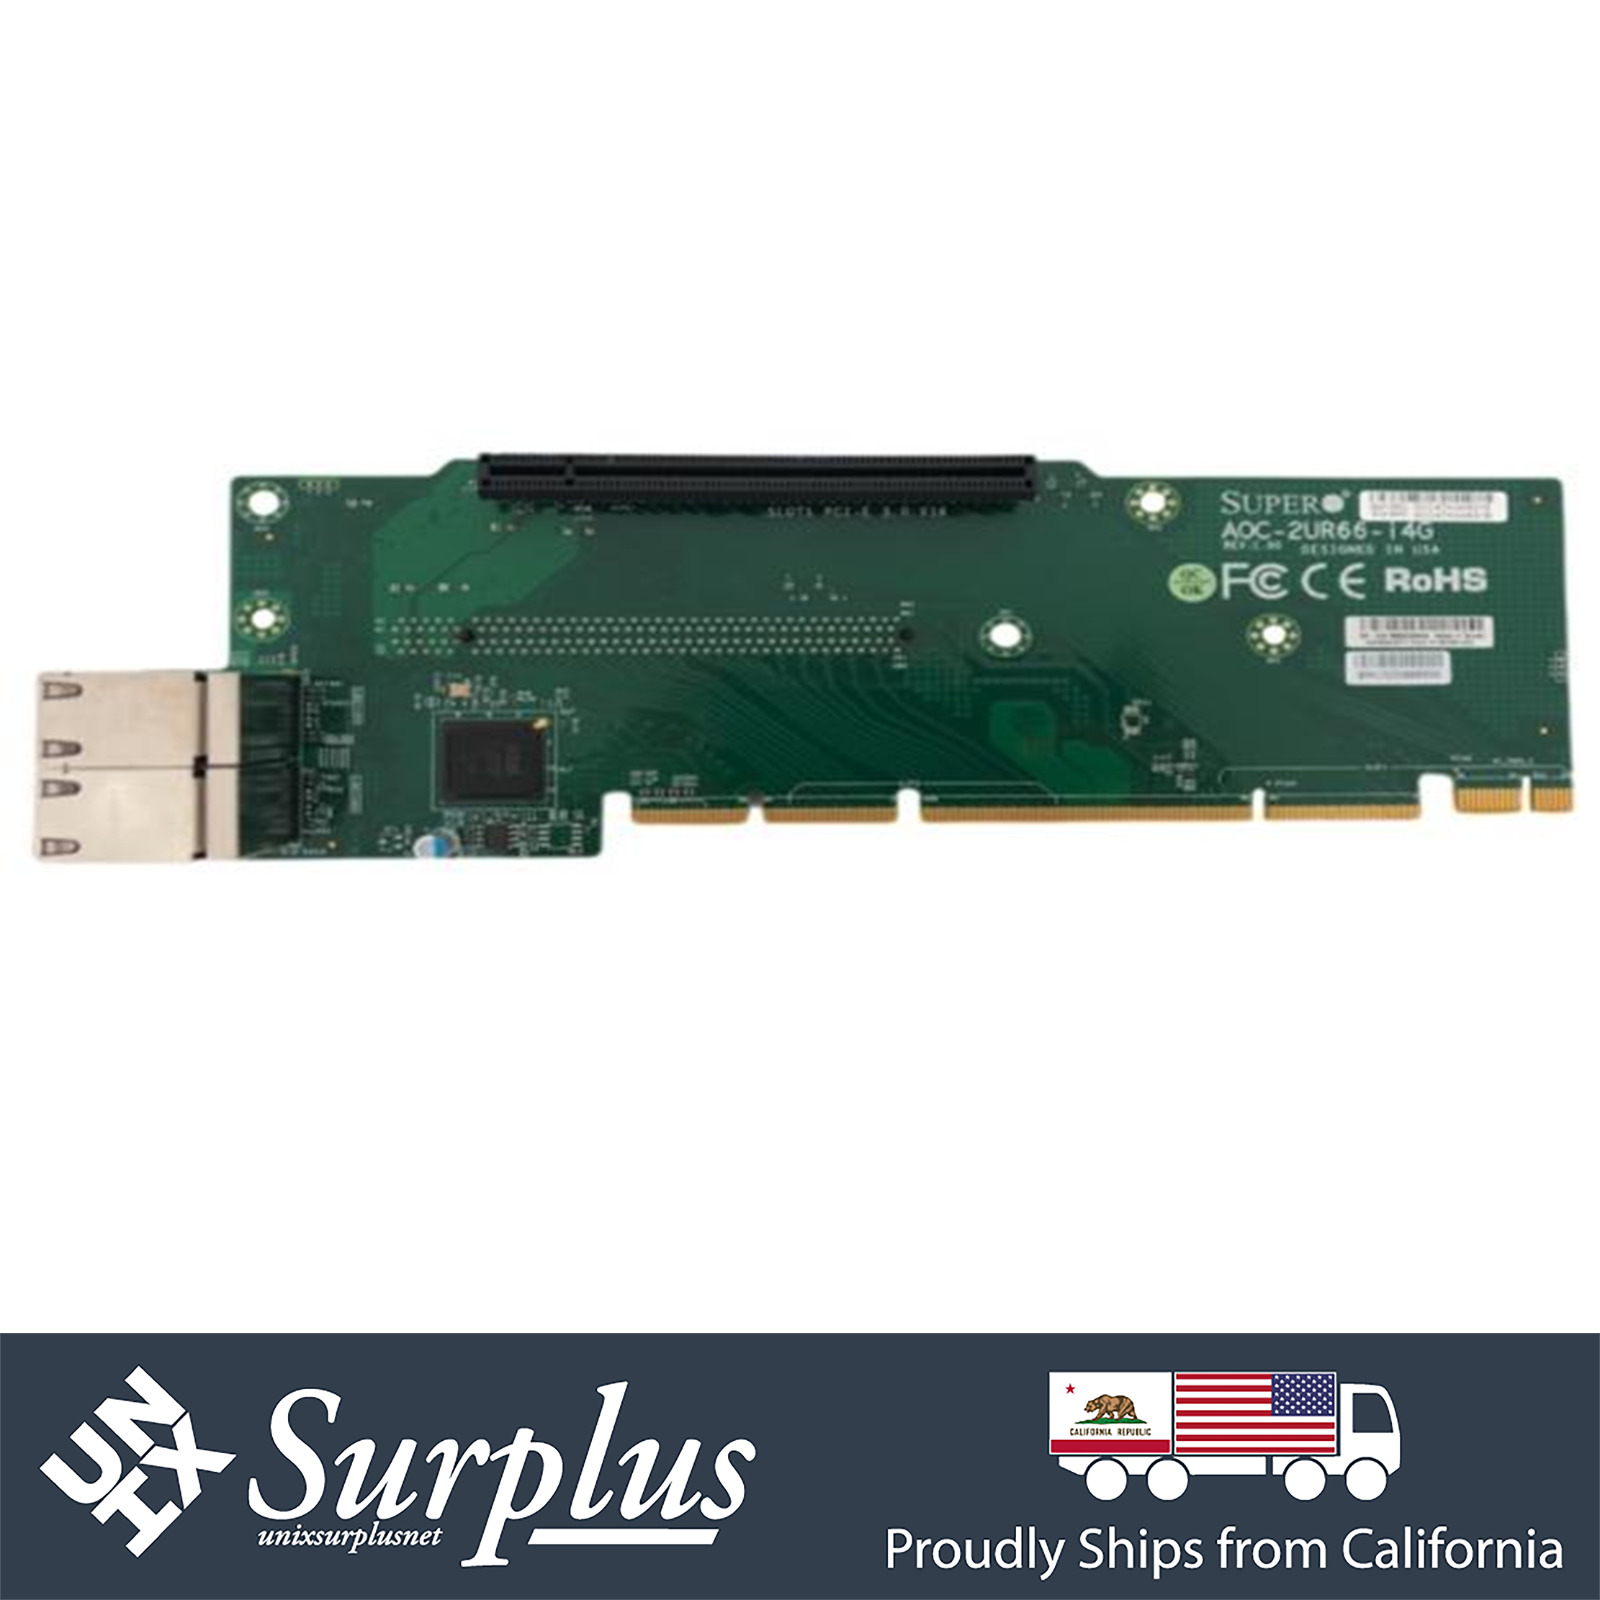 Supermicro AOC-2UR66-I4G 2U 4 Port 1GB 2x PCIe 3.0 x16 Ultra Riser for X11DPU